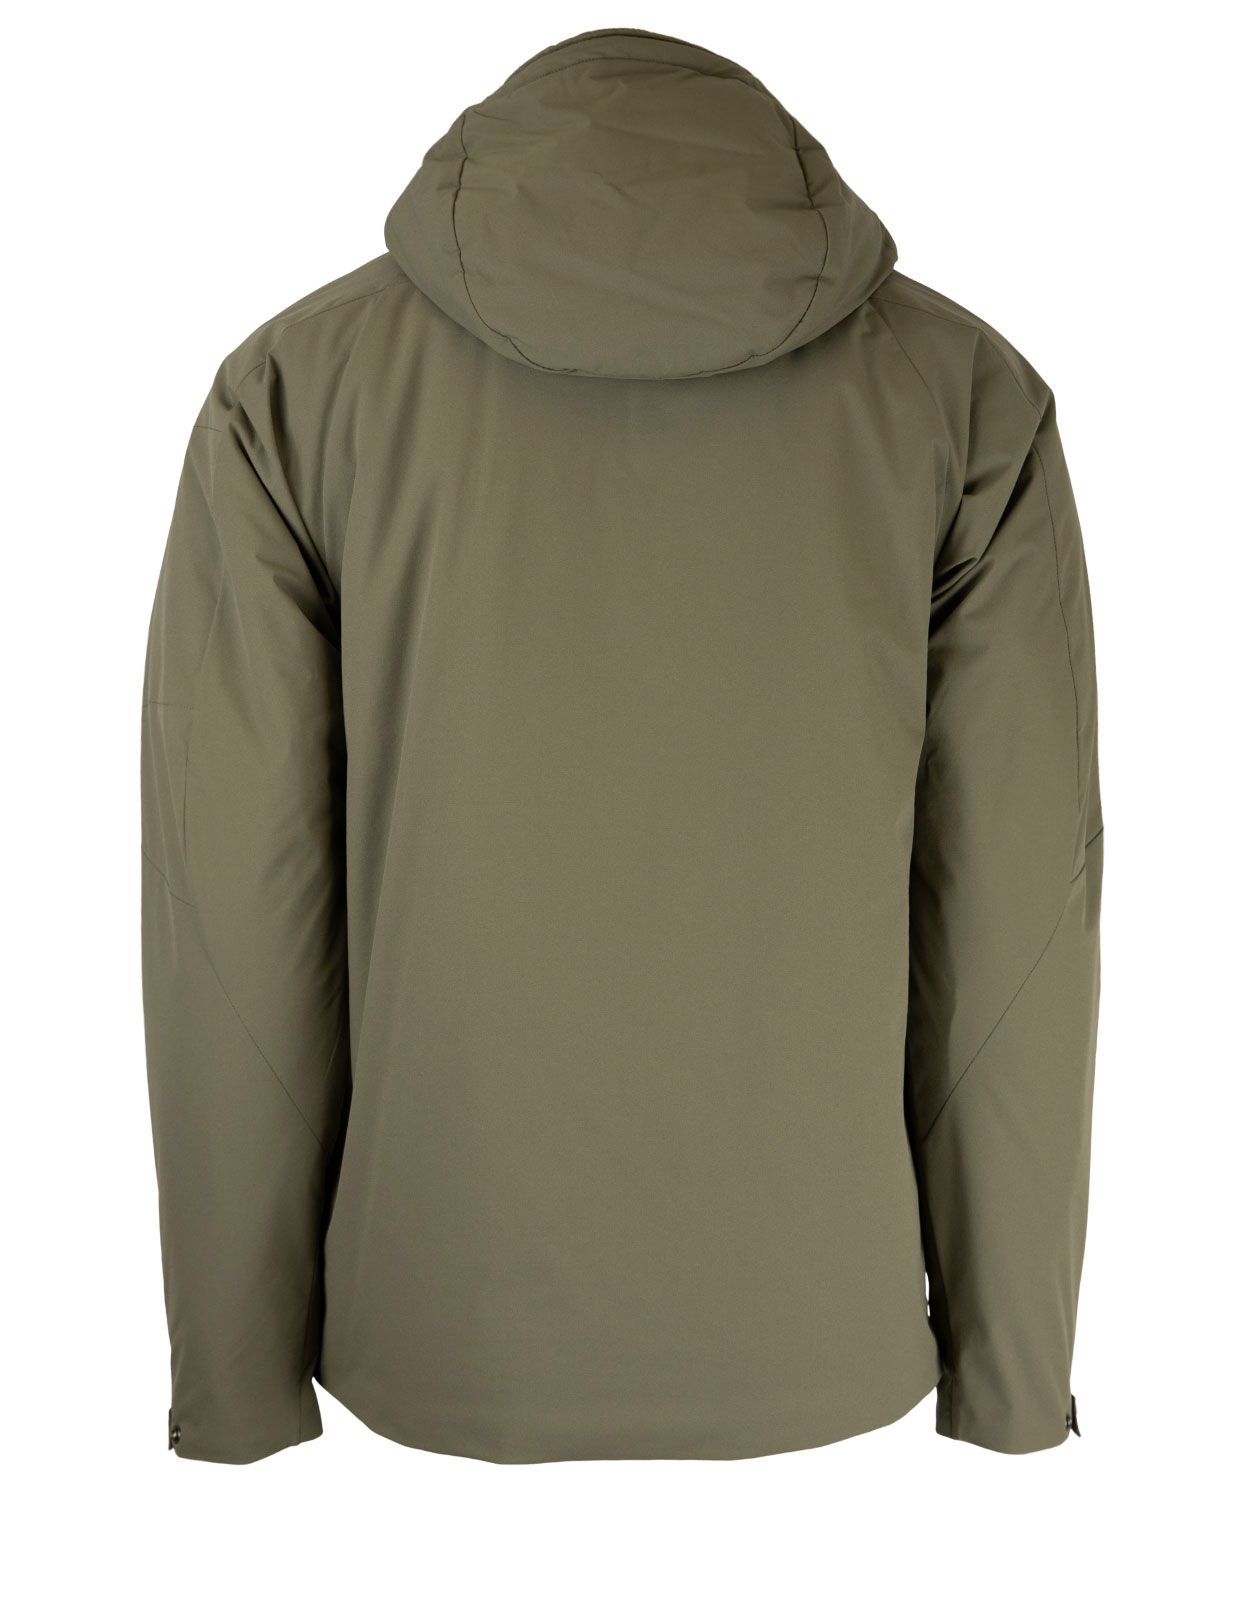 Pro-Tek Hooded Jacket Olive Green Stl 52